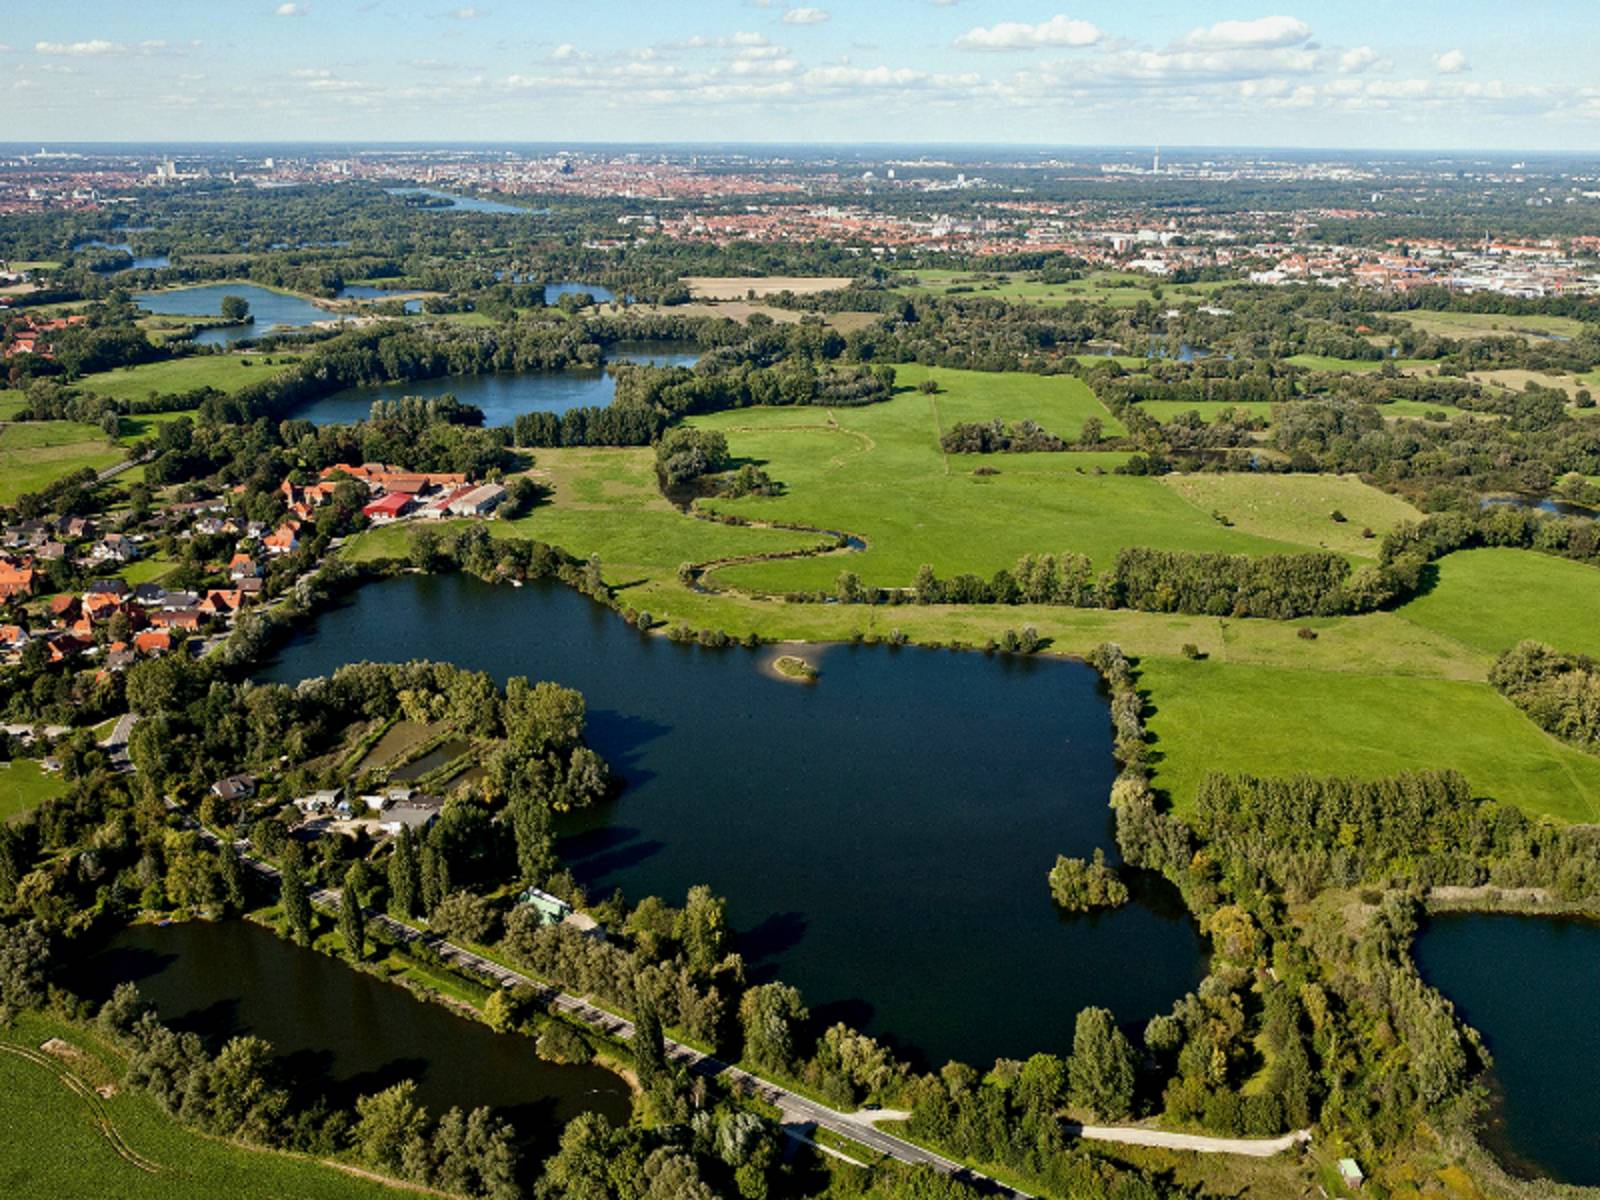 Luftaufnahme: Mehrere kleine Gewässer sind durch Gräben miteinander verbunden. Die Gewässer werden unterbrochen von Grünflcäehn, Bäumen und kleinen Siedlungen. Im Hintergrund ist die Stadt Hannover mit Maschsee und Fernsehturm zu erkennen.